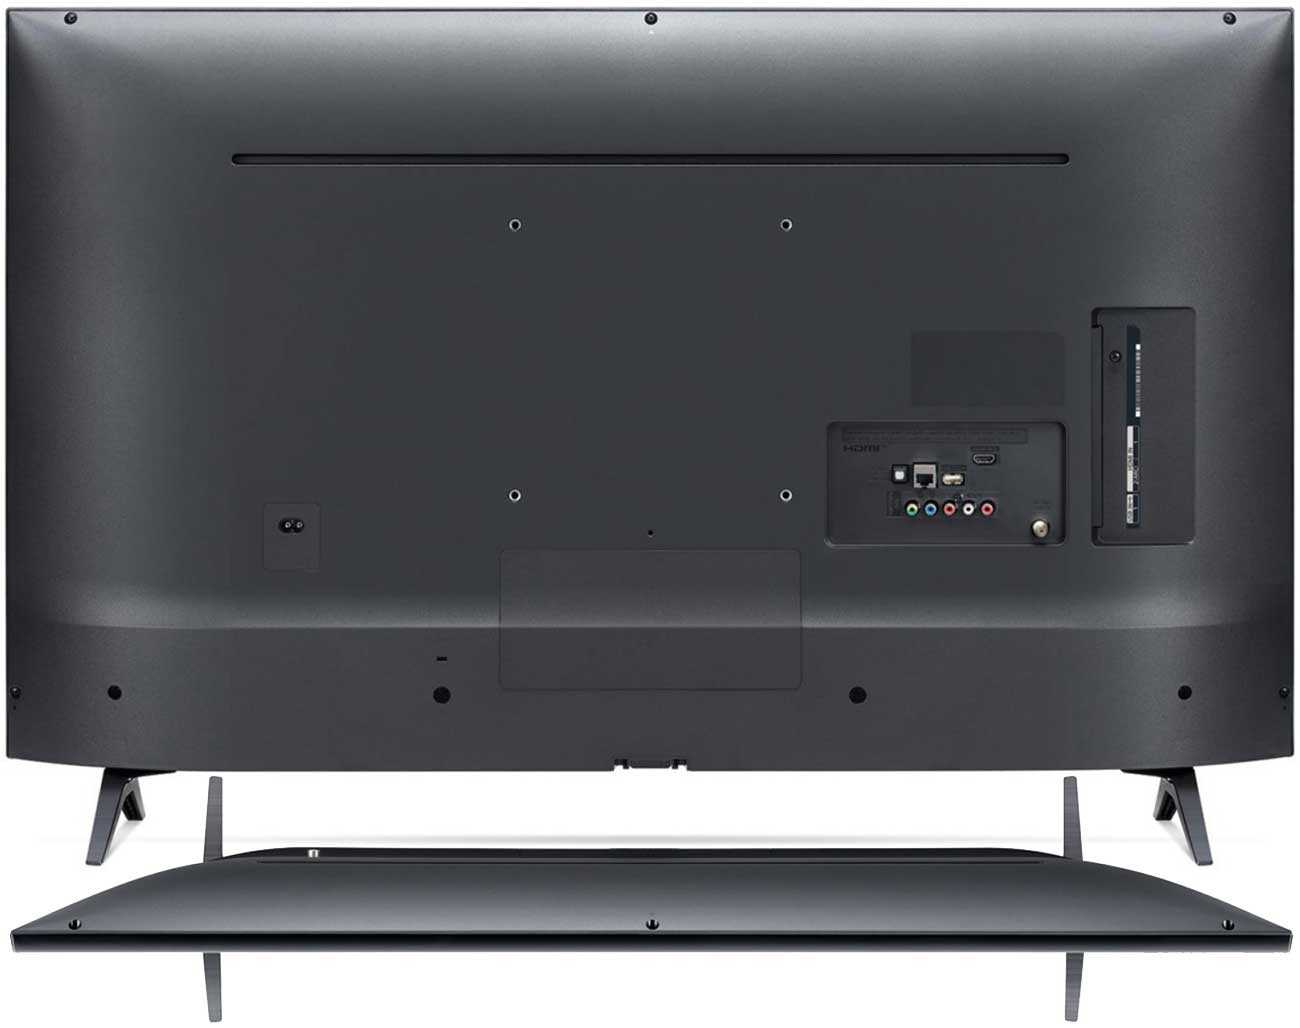 Телевизор LG 60LB580V - подробные характеристики обзоры видео фото Цены в интернет-магазинах где можно купить телевизор LG 60LB580V